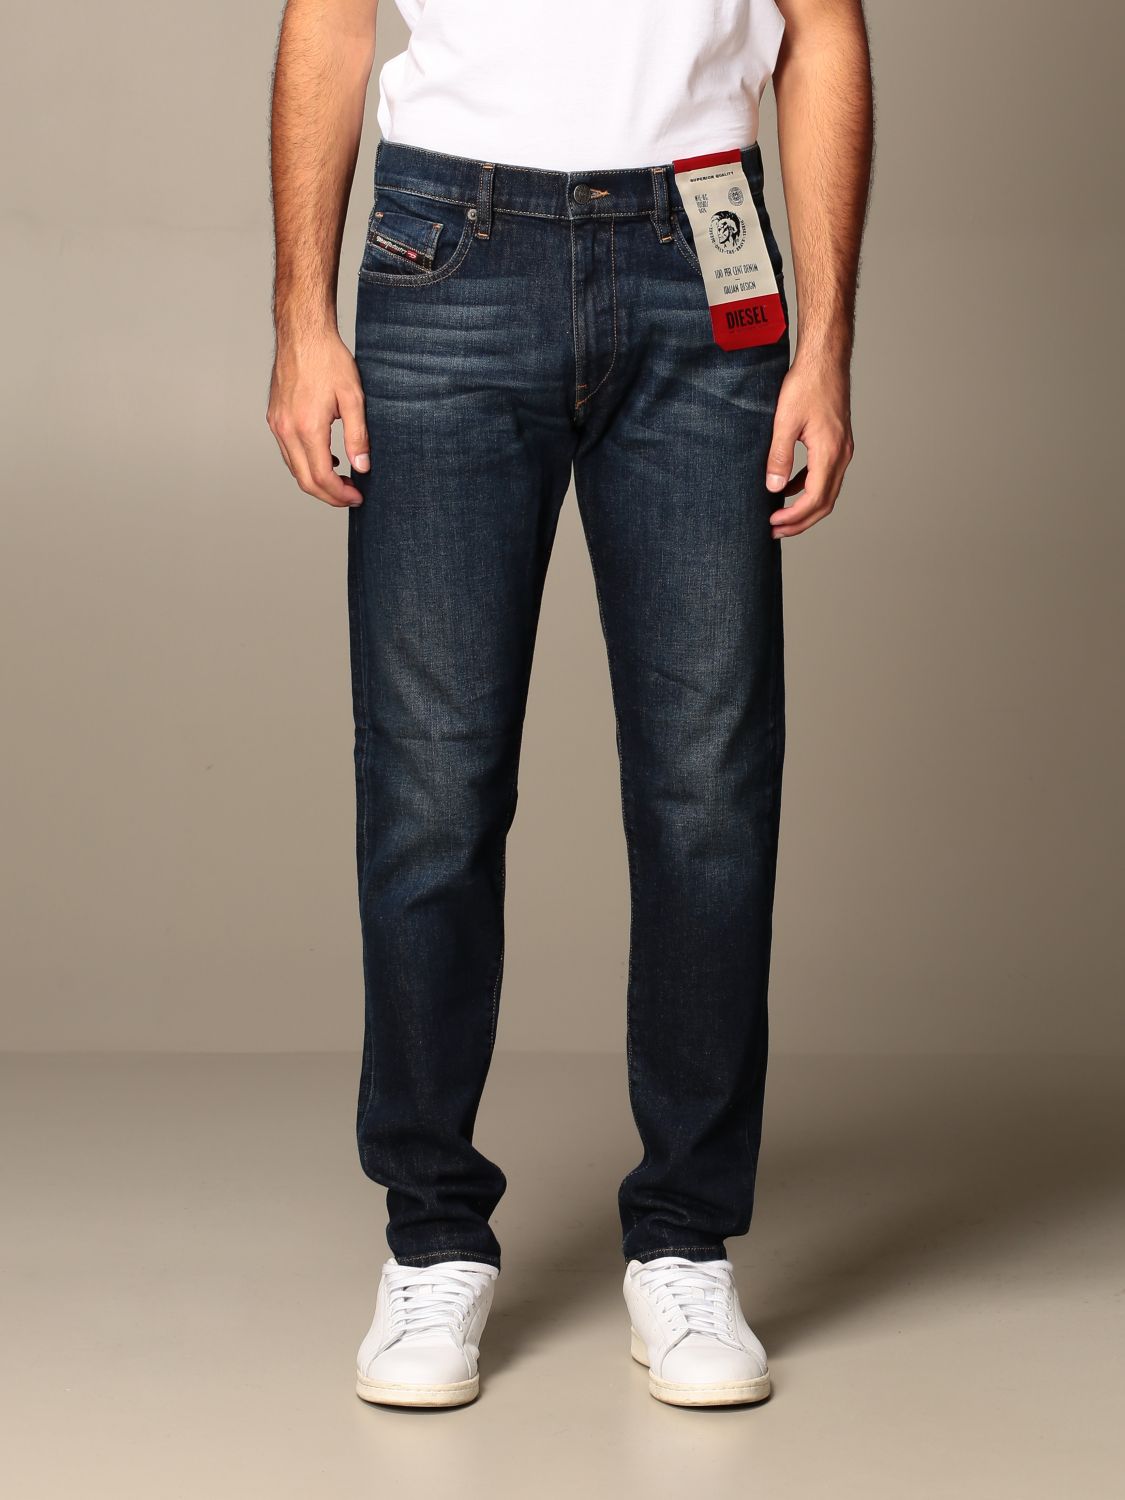 Inleg Geweldig Oude man Diesel Outlet: D-strukt jeans in slim used denim - Denim | Diesel jeans  00SPW5 009HN online on GIGLIO.COM